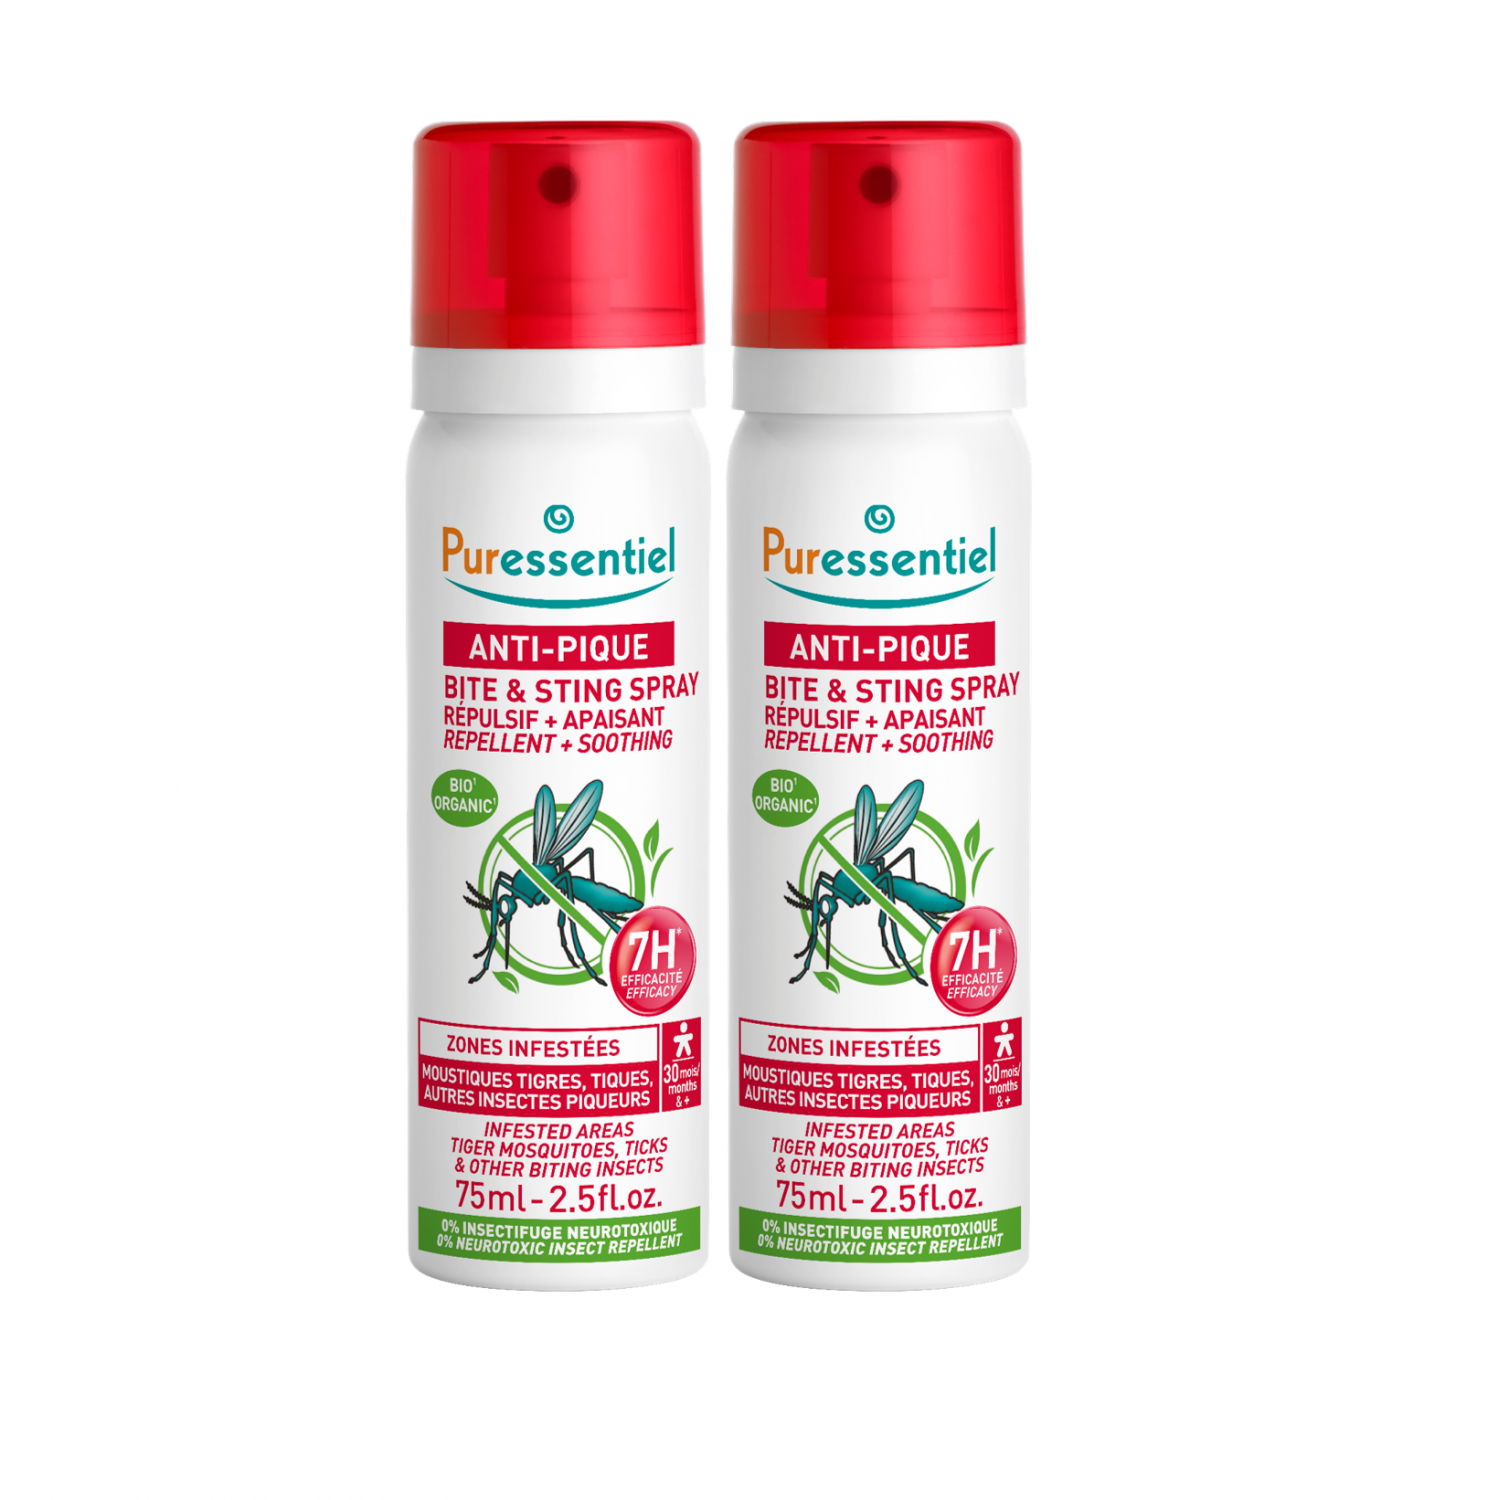 PARAKITO Spray Anti Moustiques Tropic 75ML